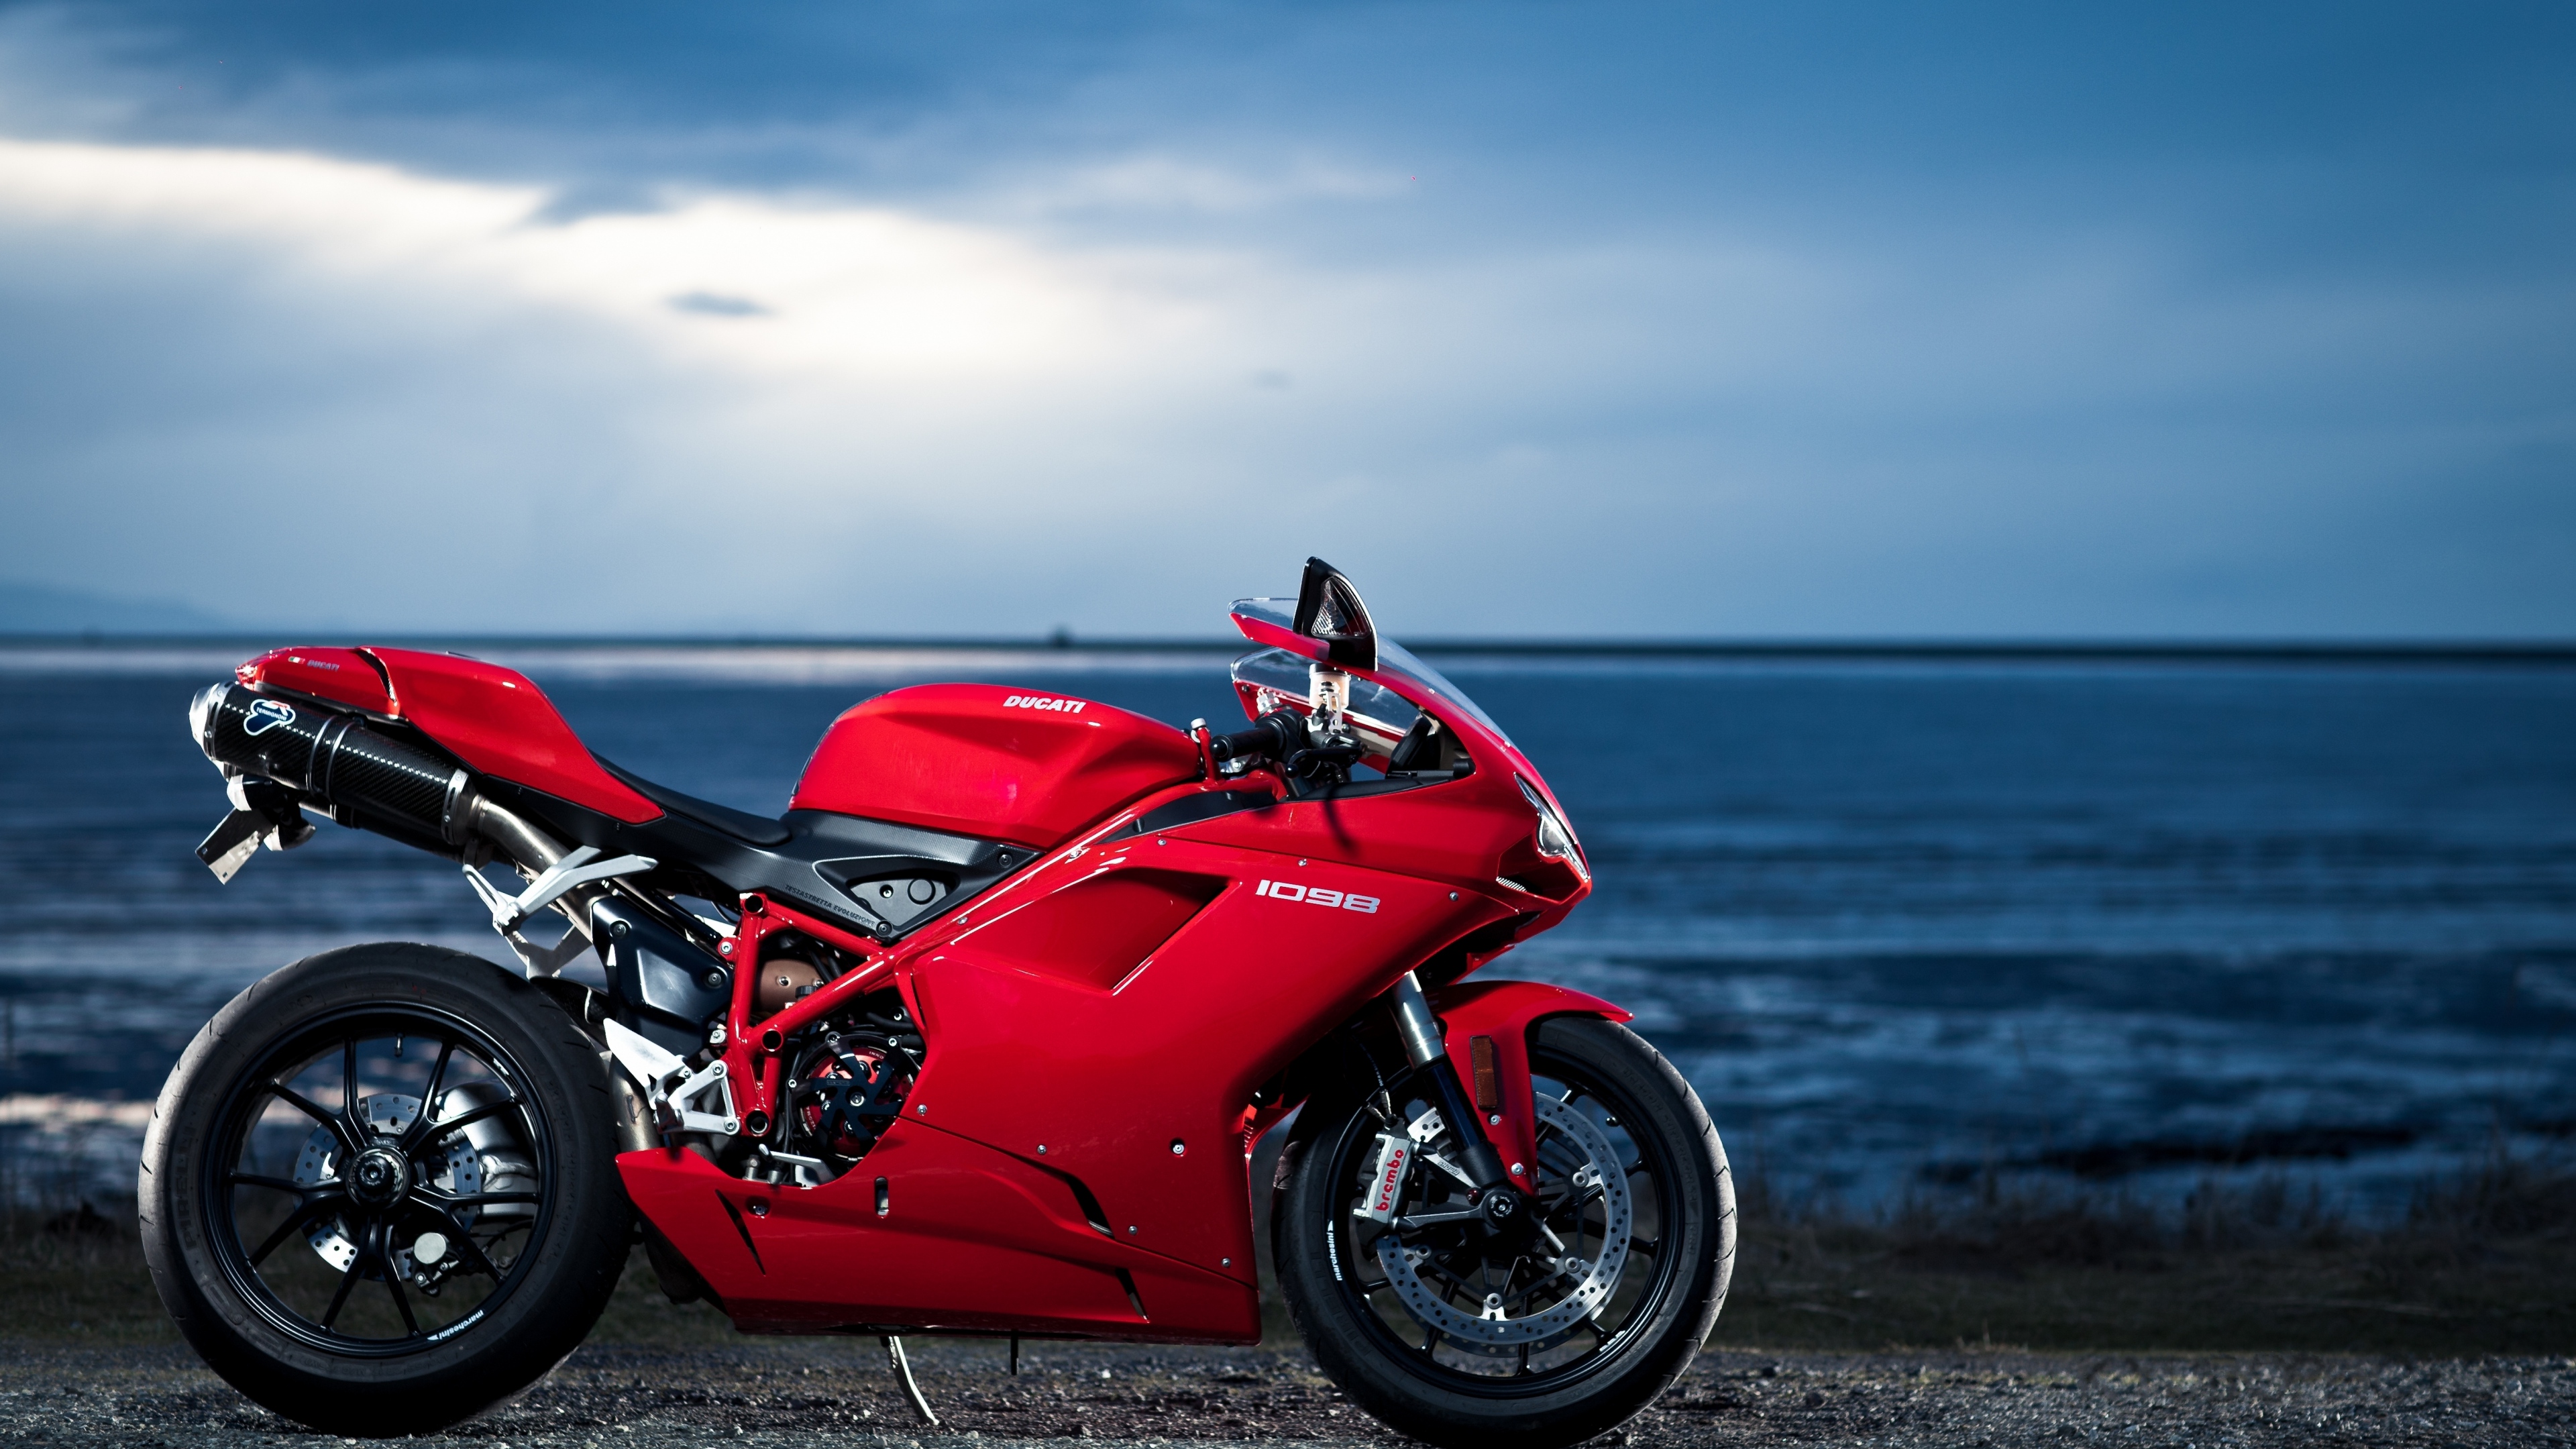 Обои дукати 1098, ducati, мотоцикл, красный цвет, авто в разрешении 3840x2160